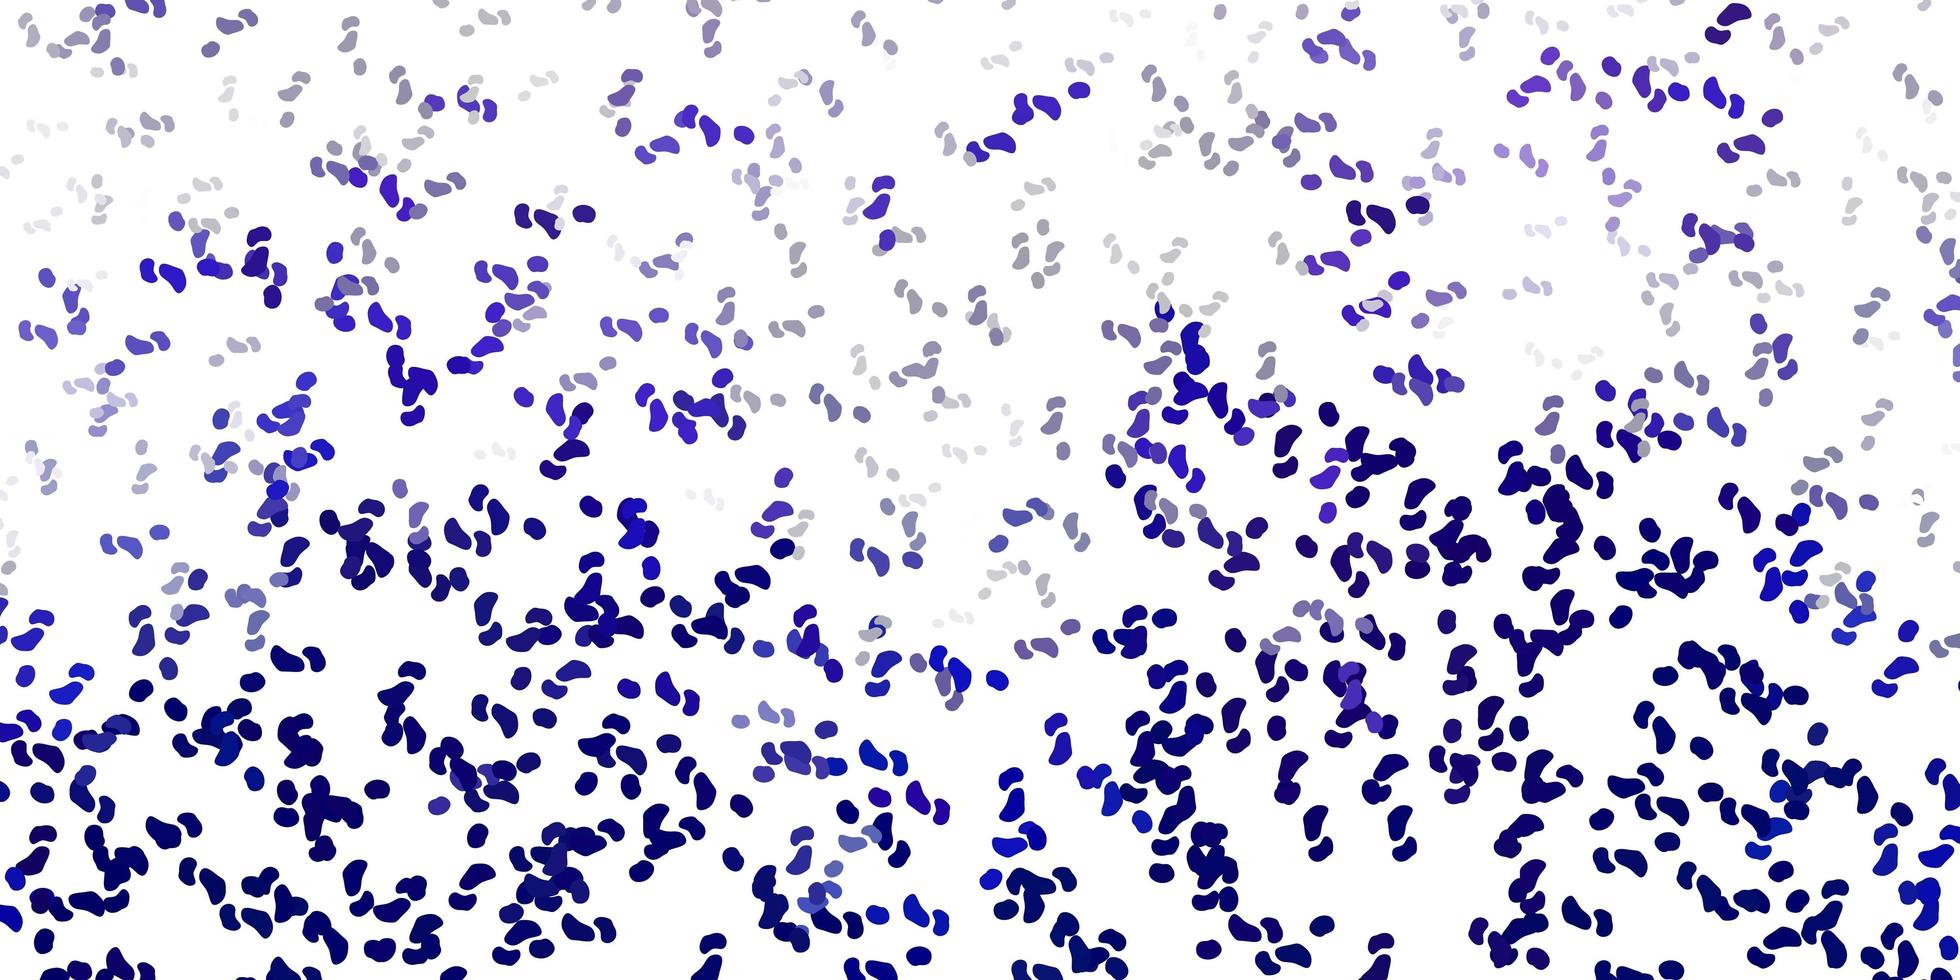 sfondo vettoriale viola chiaro con forme casuali.